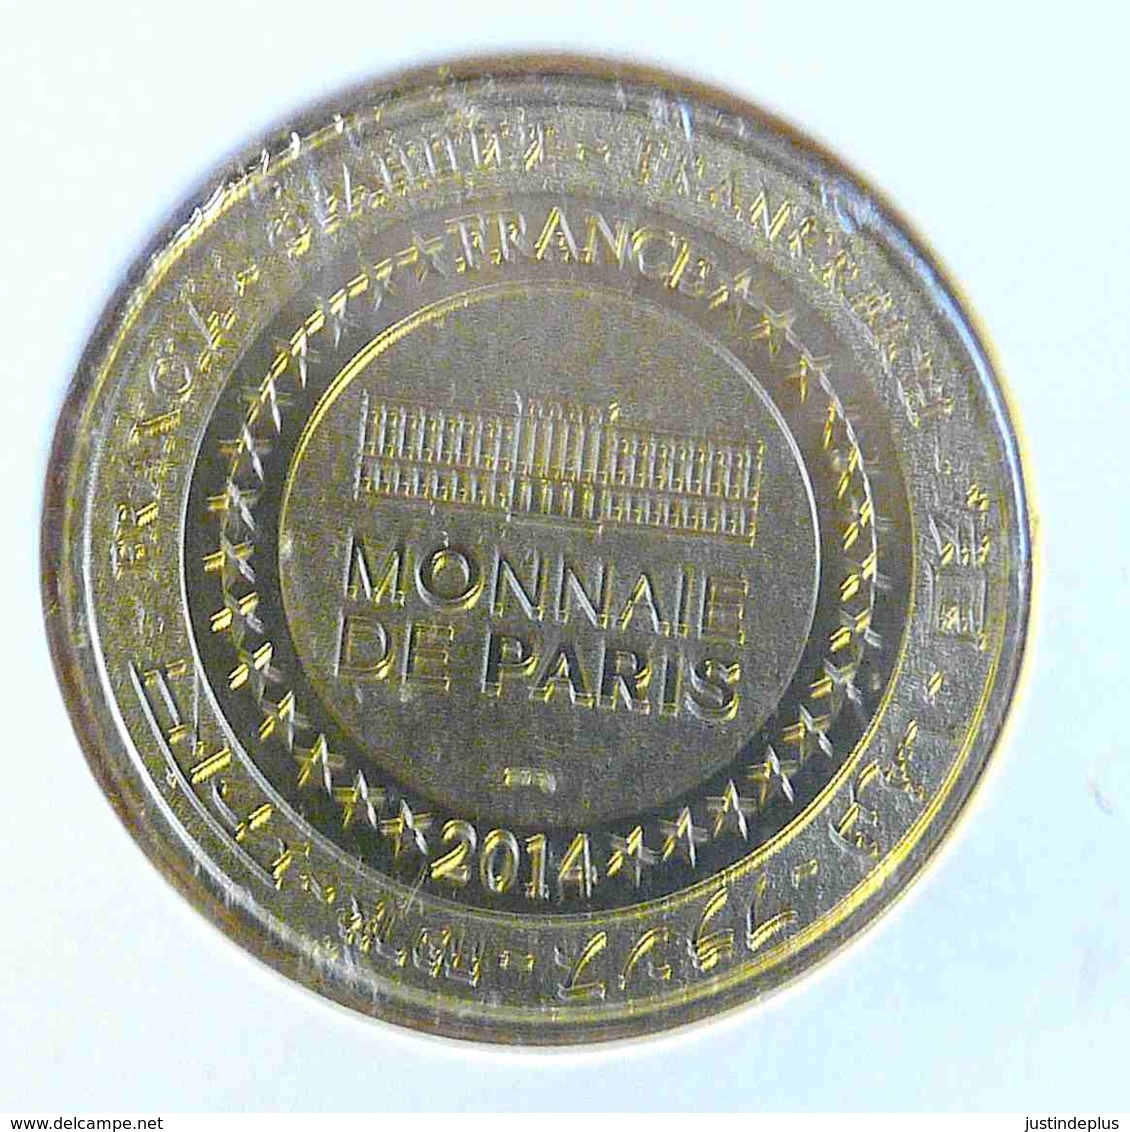 NOTRE DAME DE PARIS ET SA FLECHE MONNAIE DE PARIS 2014 JETON TOURISTIQUE TOKEN - 2014